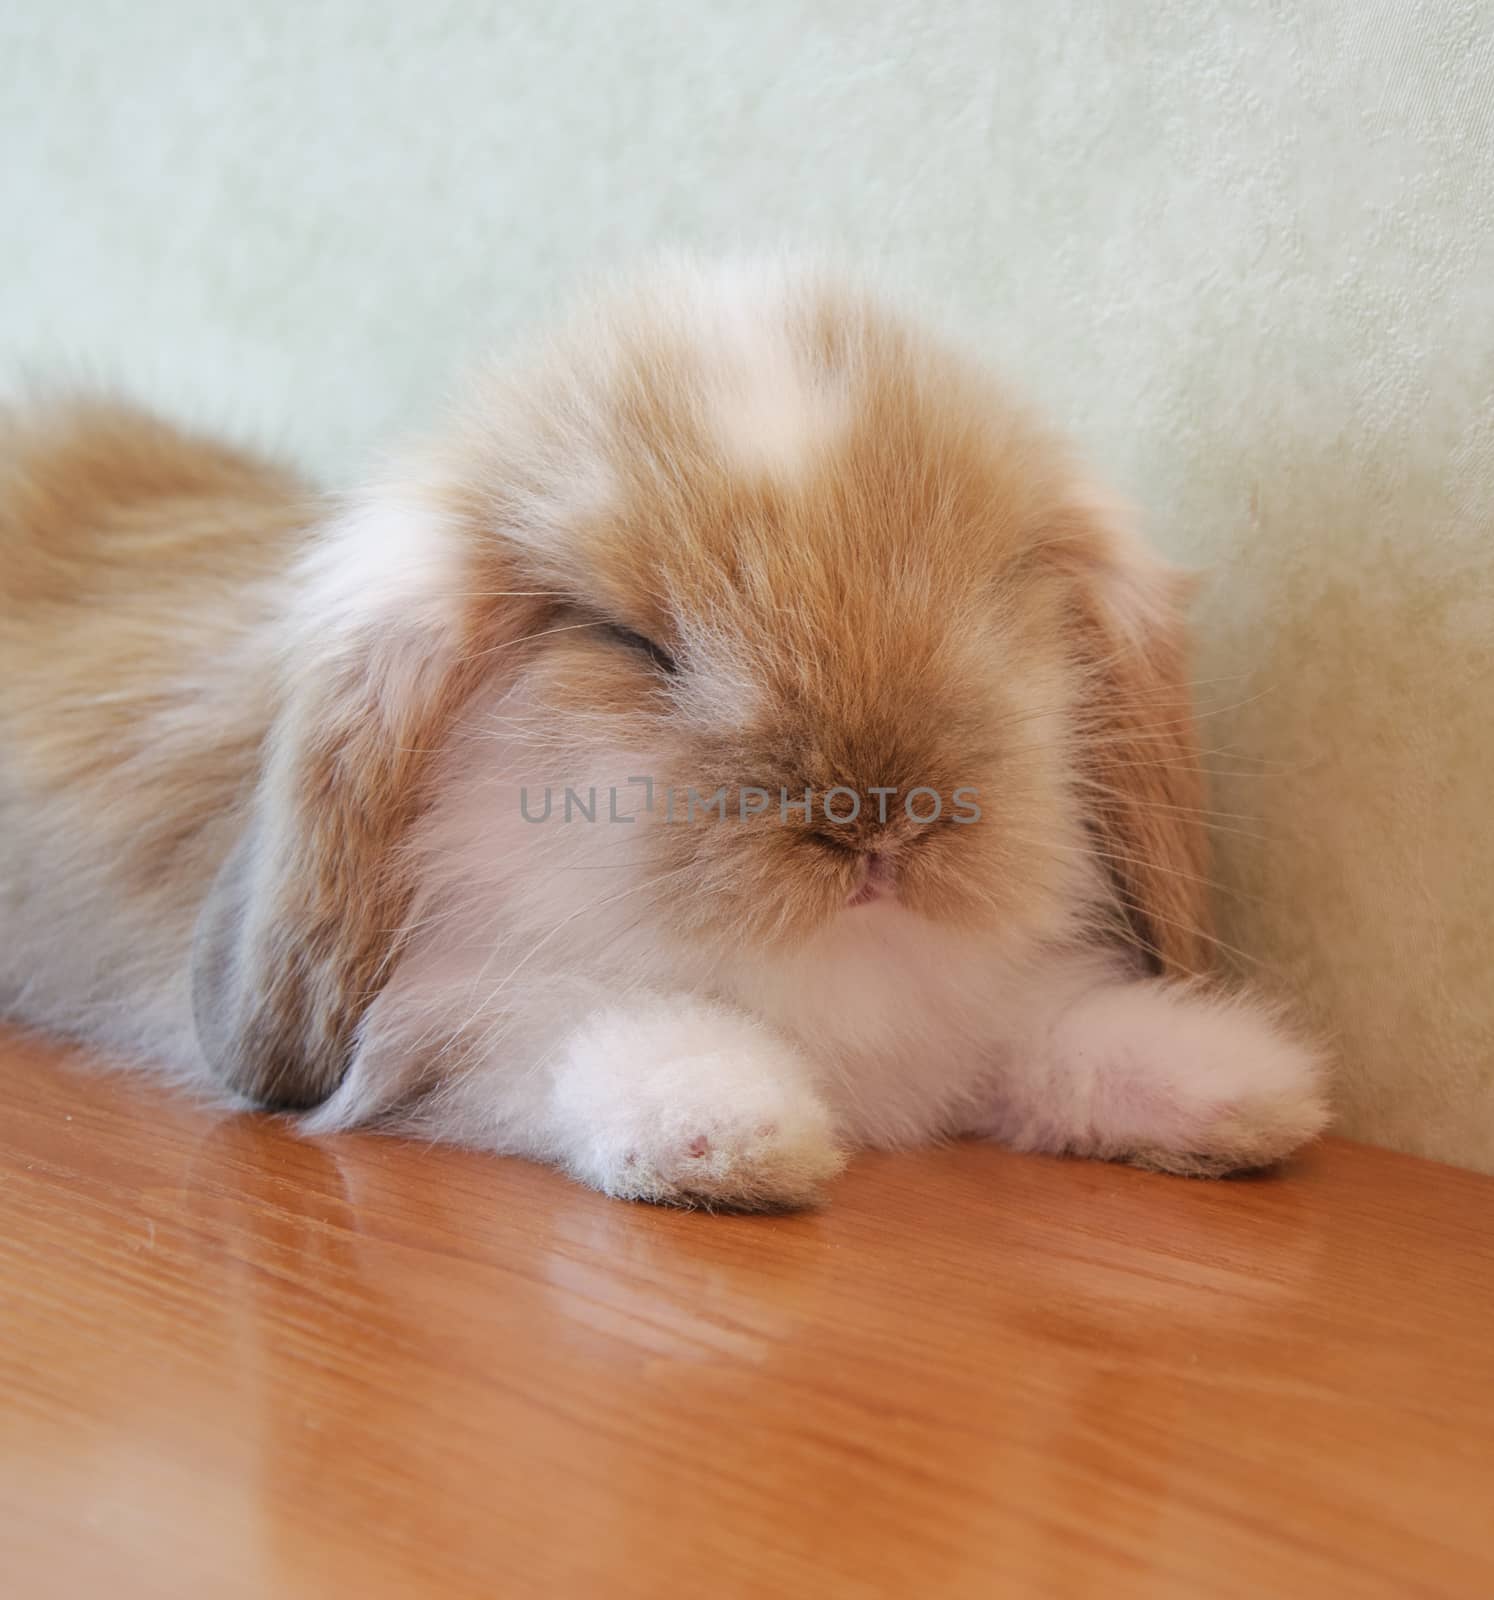 cute lop eared baby rabbit sleeping on floor